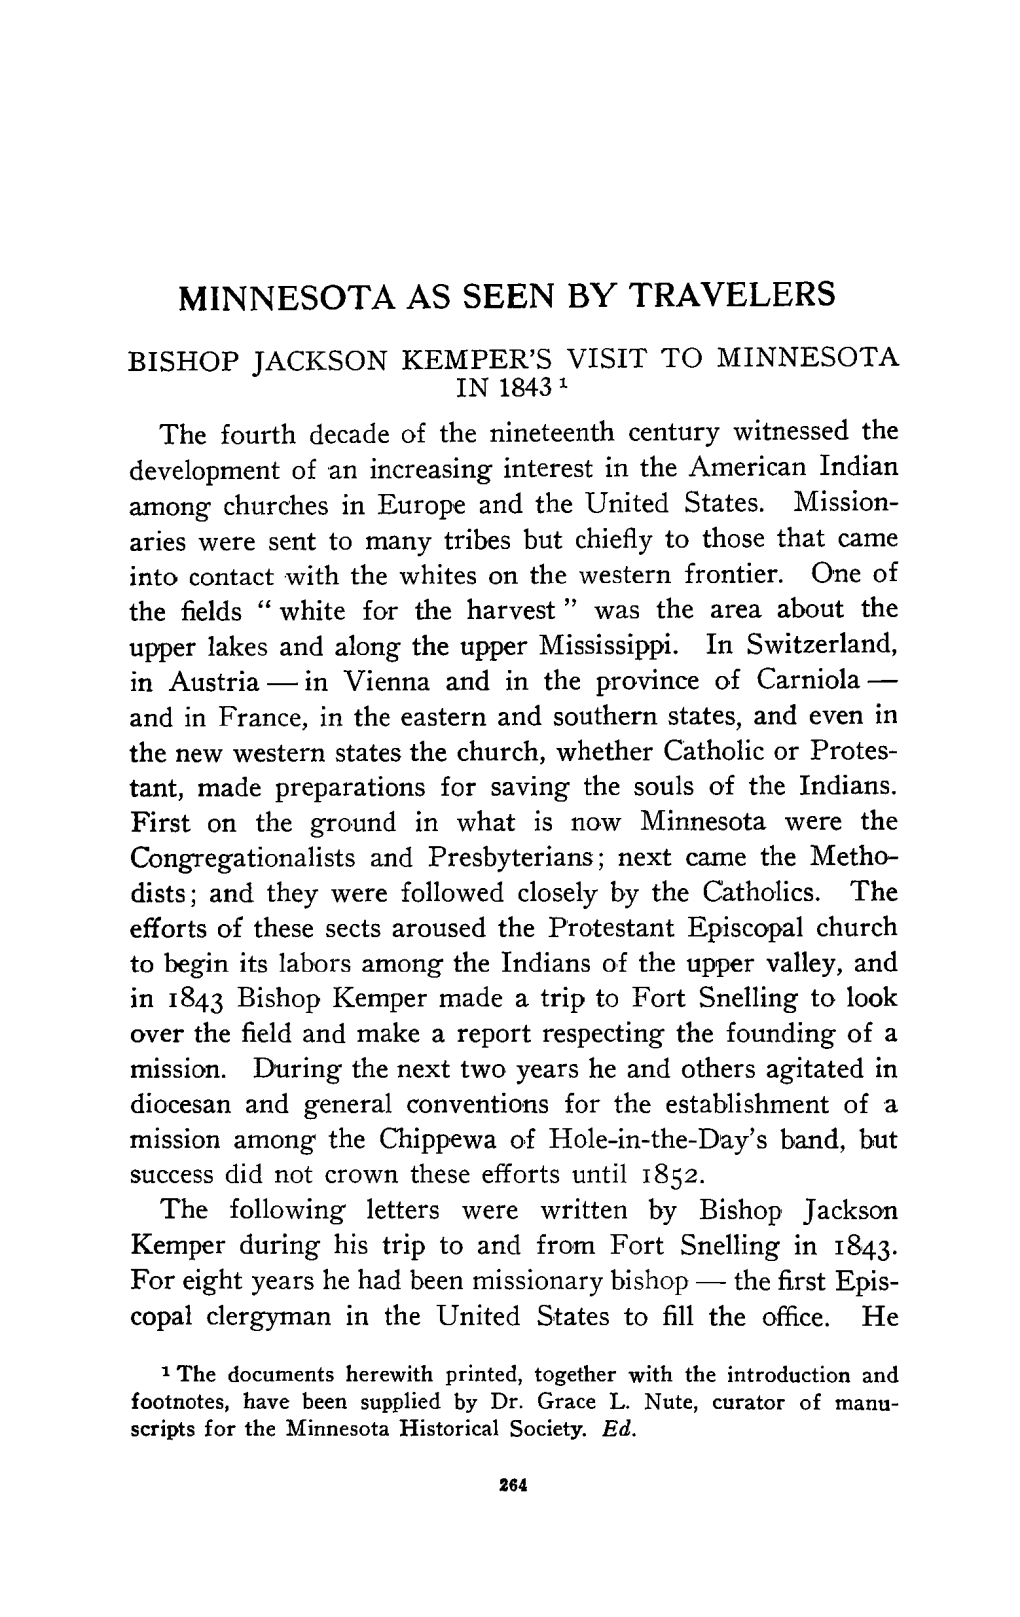 Bishop Jackson Kemper's Visit to Minnesota in 1843